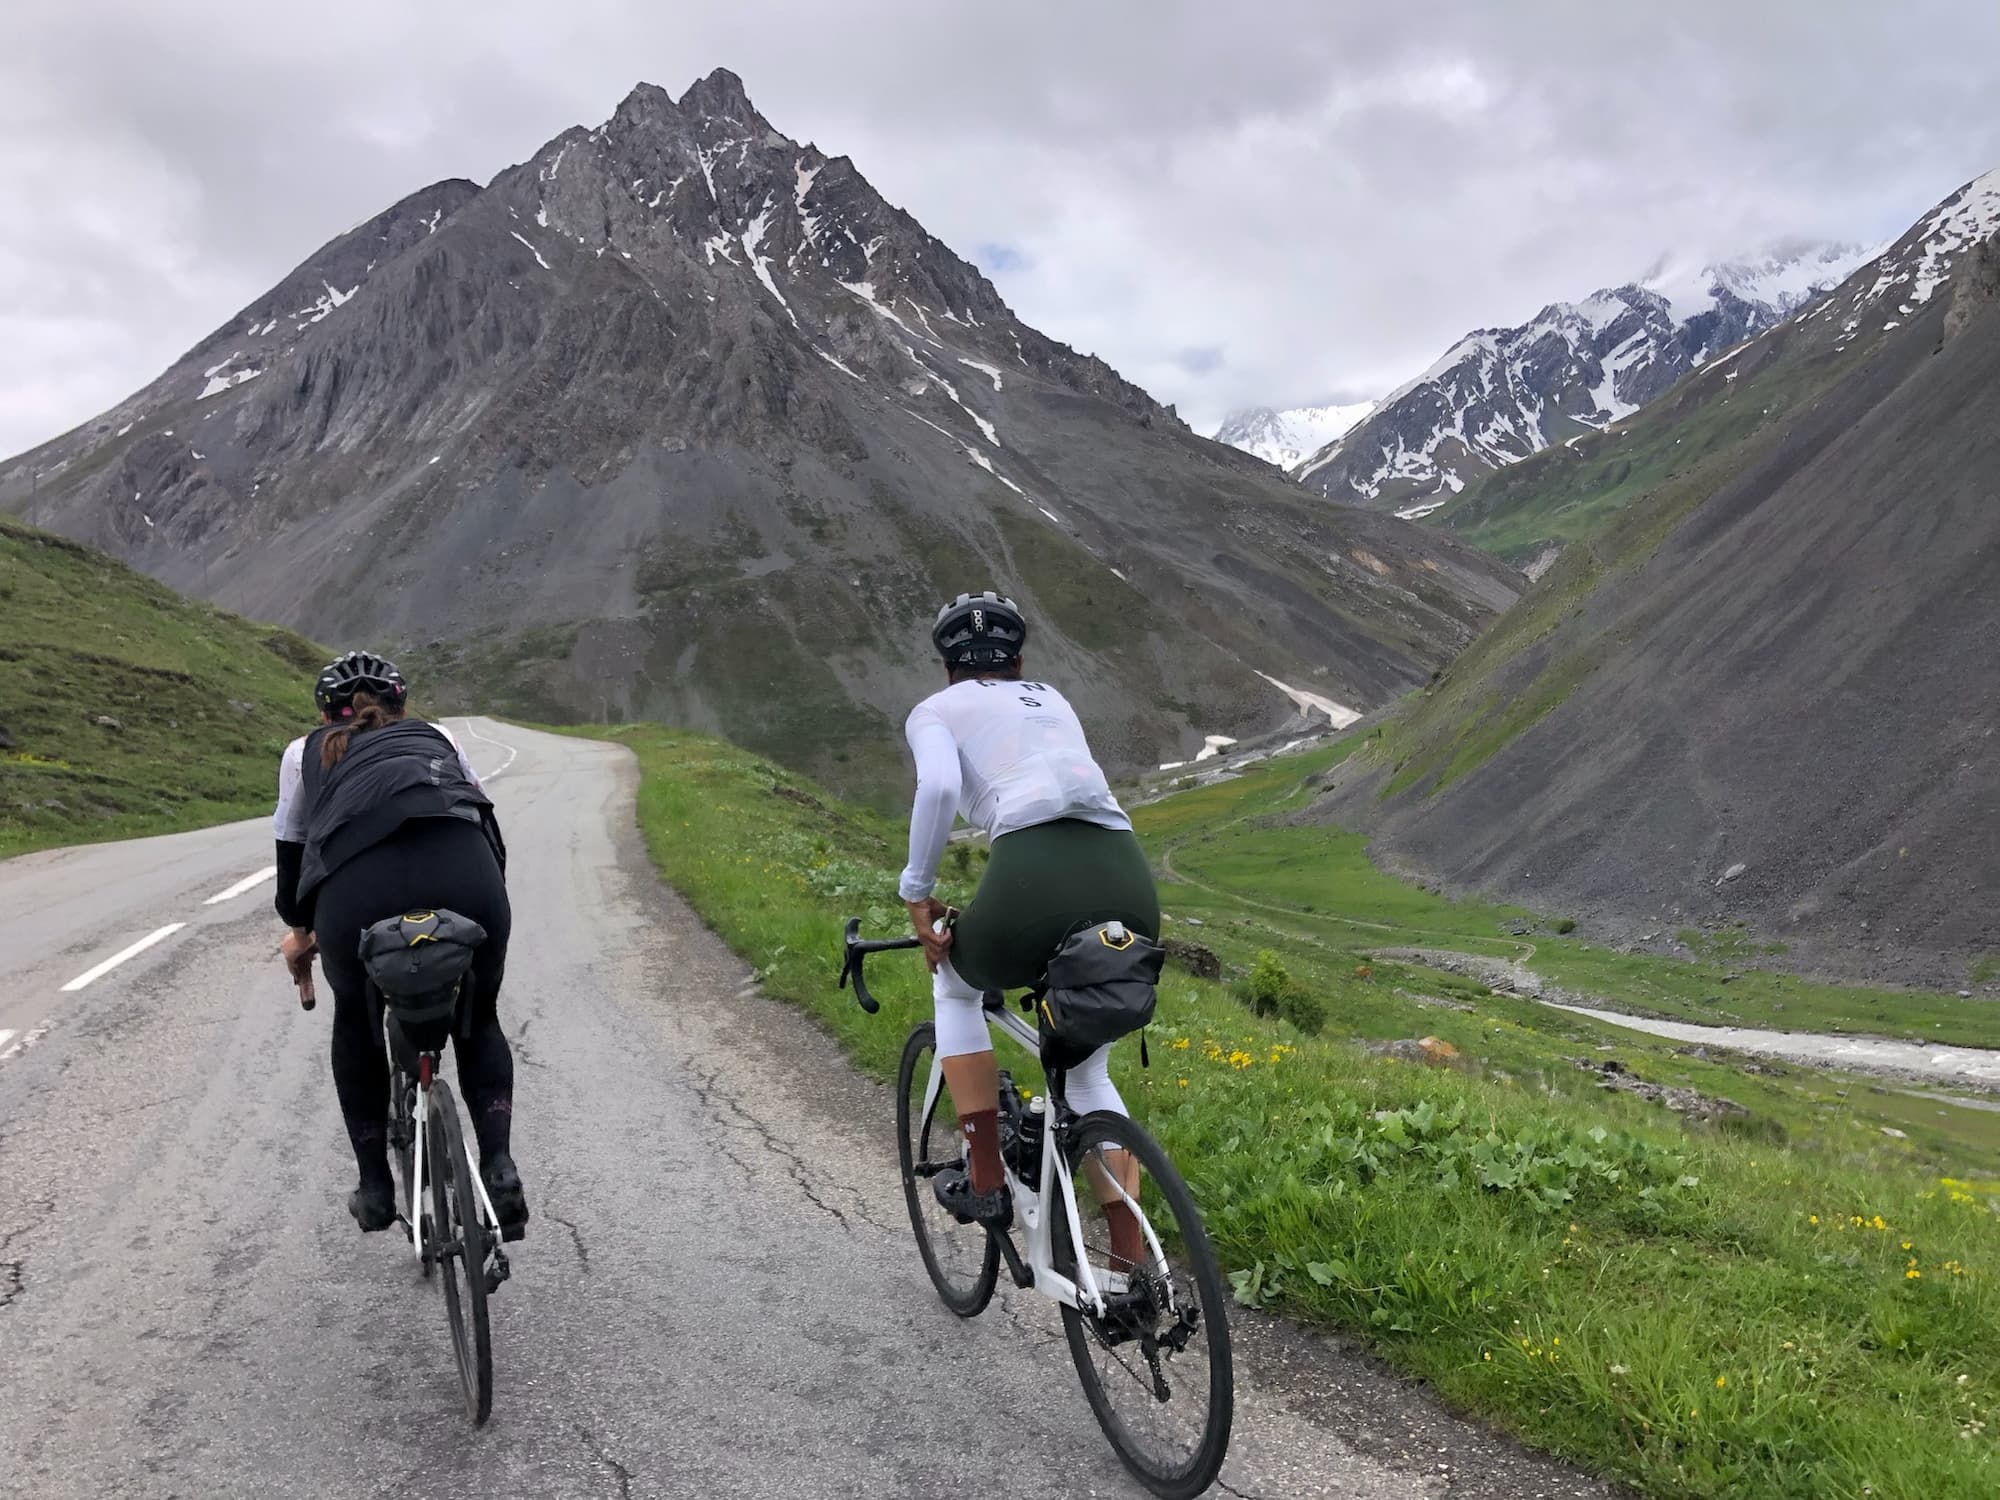 Val-BIke Expérience Valérie Pellissier organise la traversée des alpes françaises à vélo